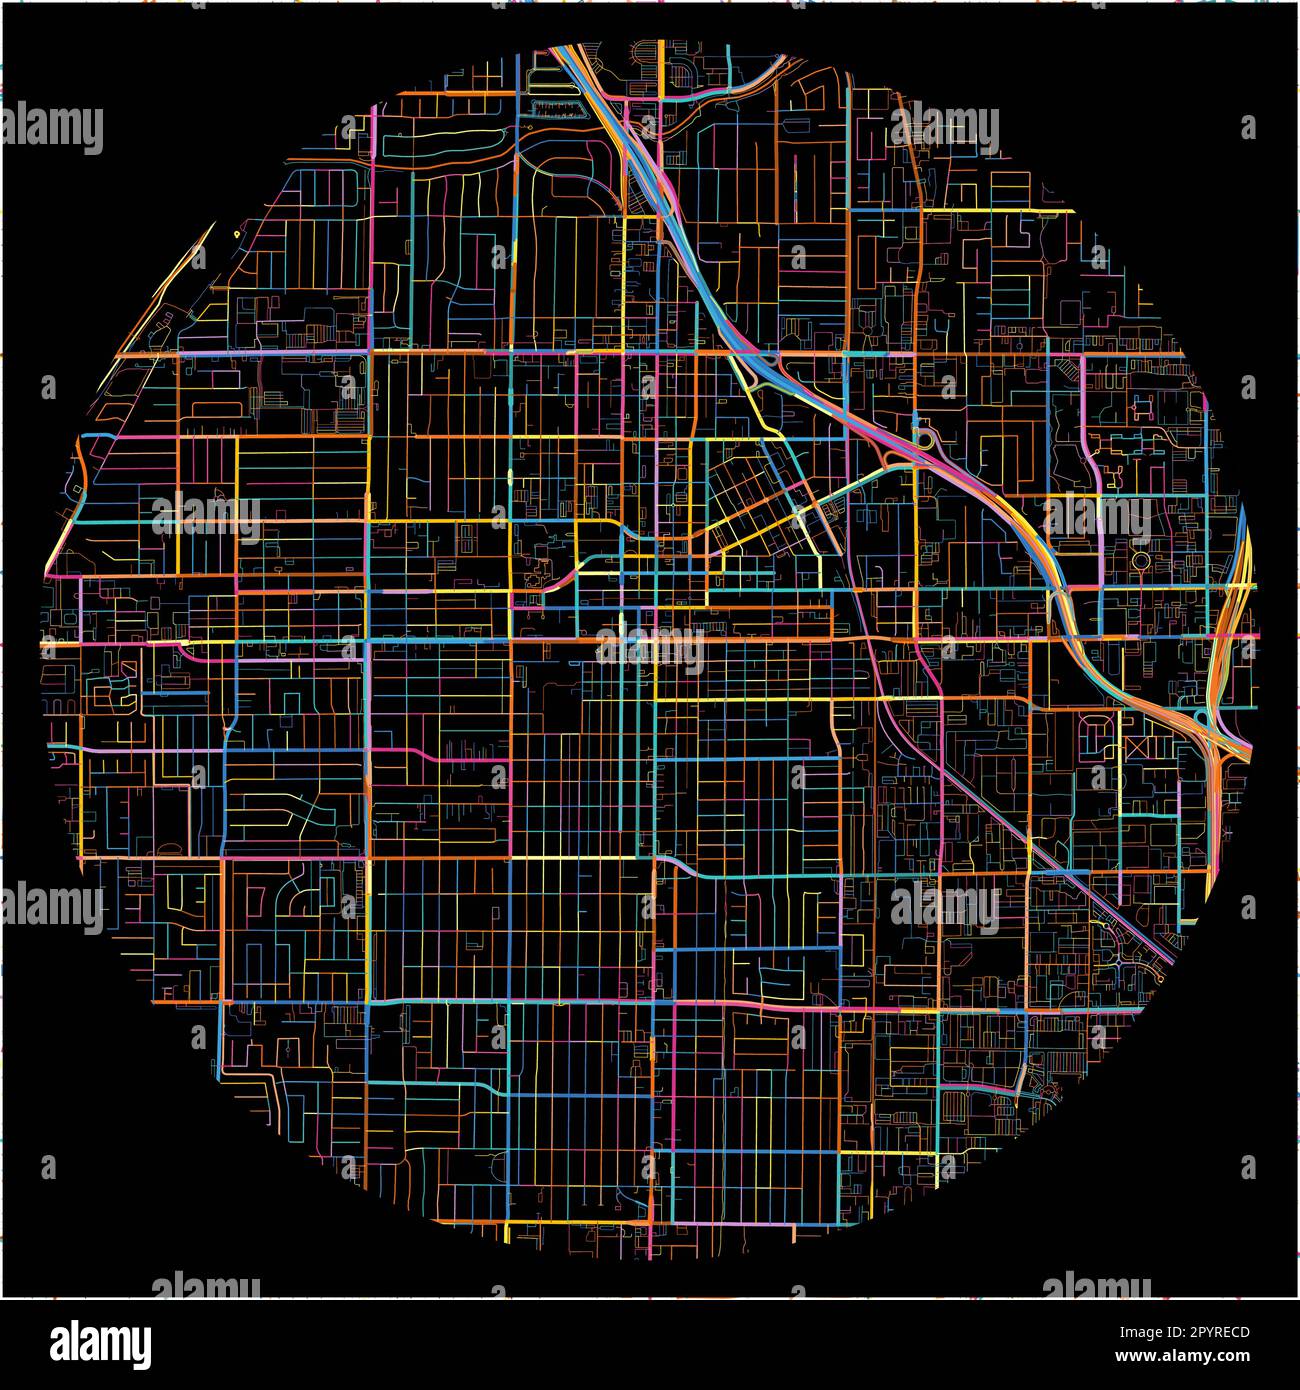 Mappa di SantaAna, California con tutte le strade principali e minori, ferrovie e corsi d'acqua. Linee colorate su sfondo nero. Illustrazione Vettoriale